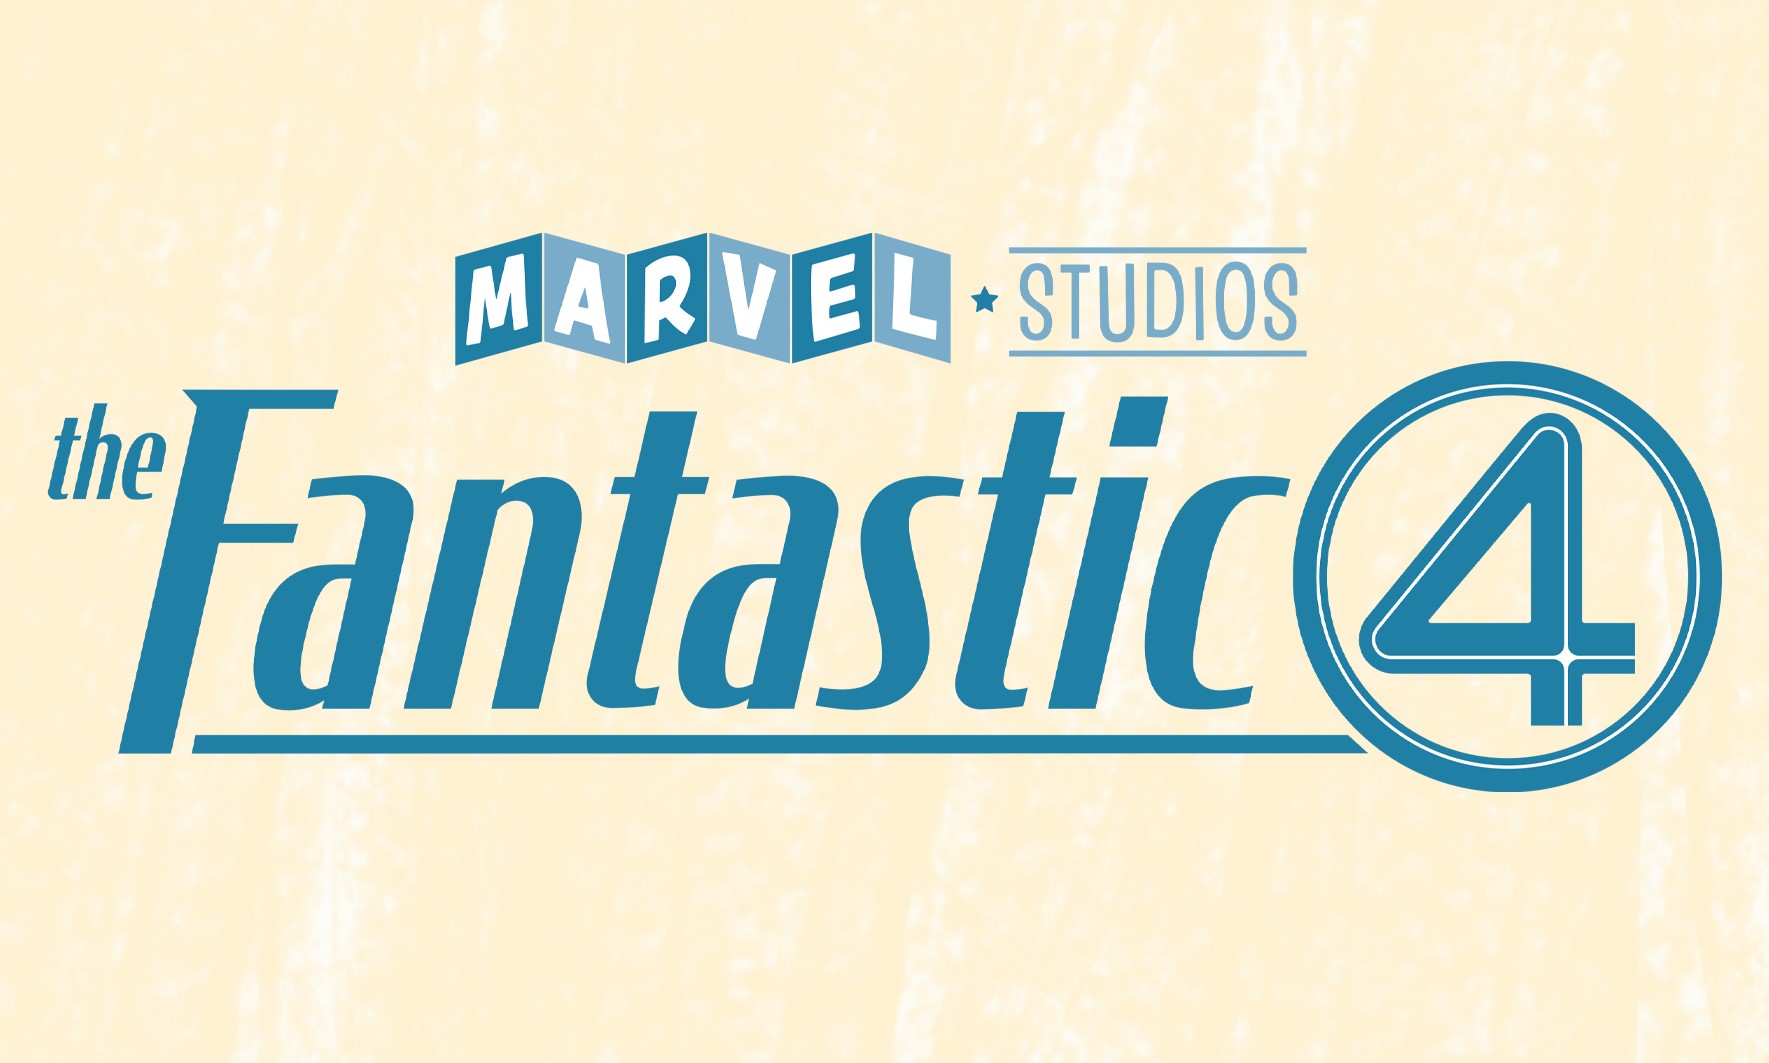 Fantastici 4: la Marvel annuncia finalmente i quattro attori protagonisti  con il primo poster! [FOTO]